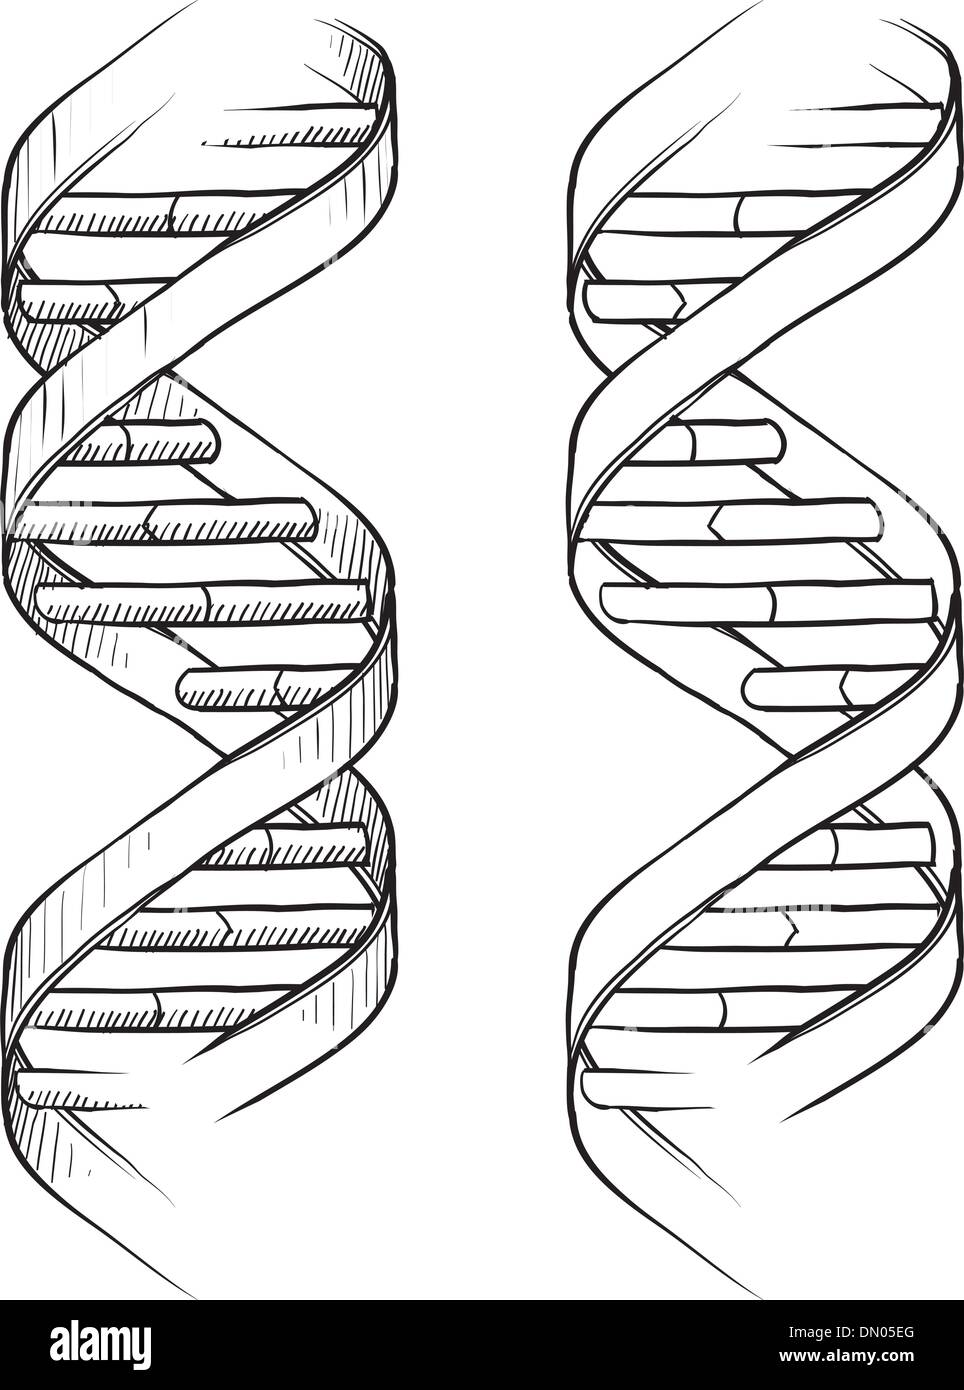 Croquis en double hélice de l'ADN Illustration de Vecteur